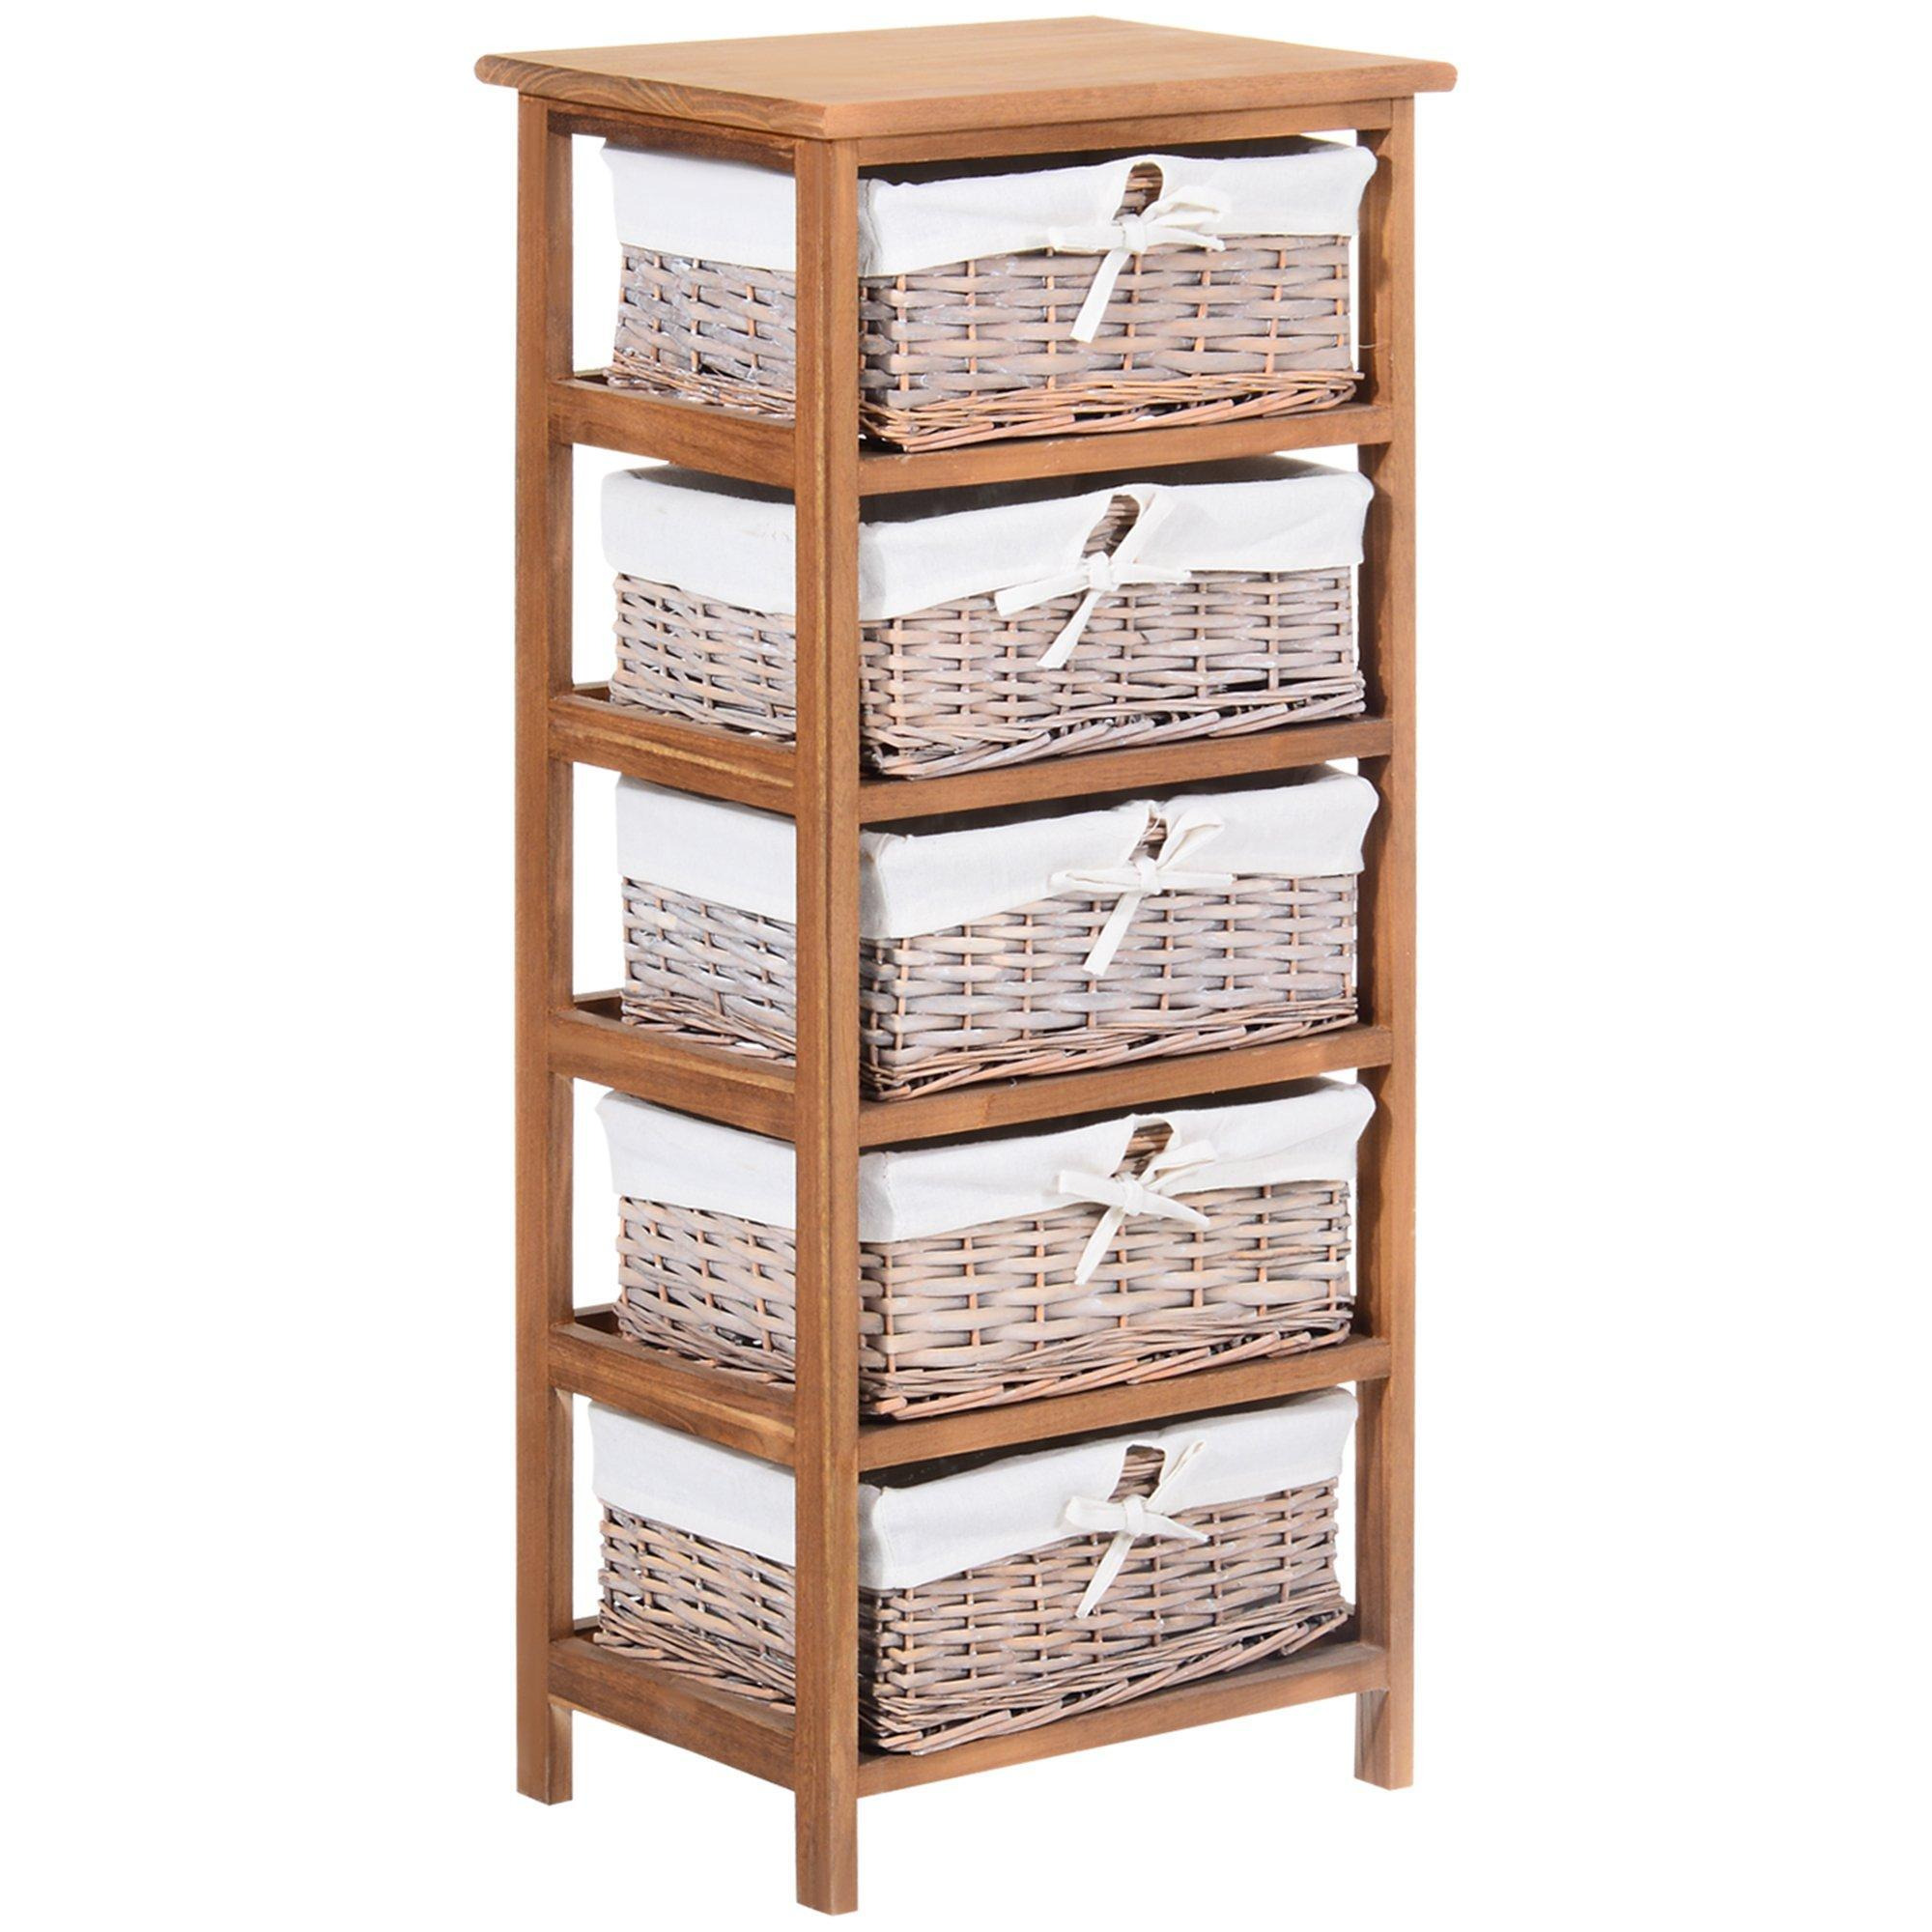 5 Drawer Dresser Wicker Storage Shelf Unit Wooden Home Organization - image 1